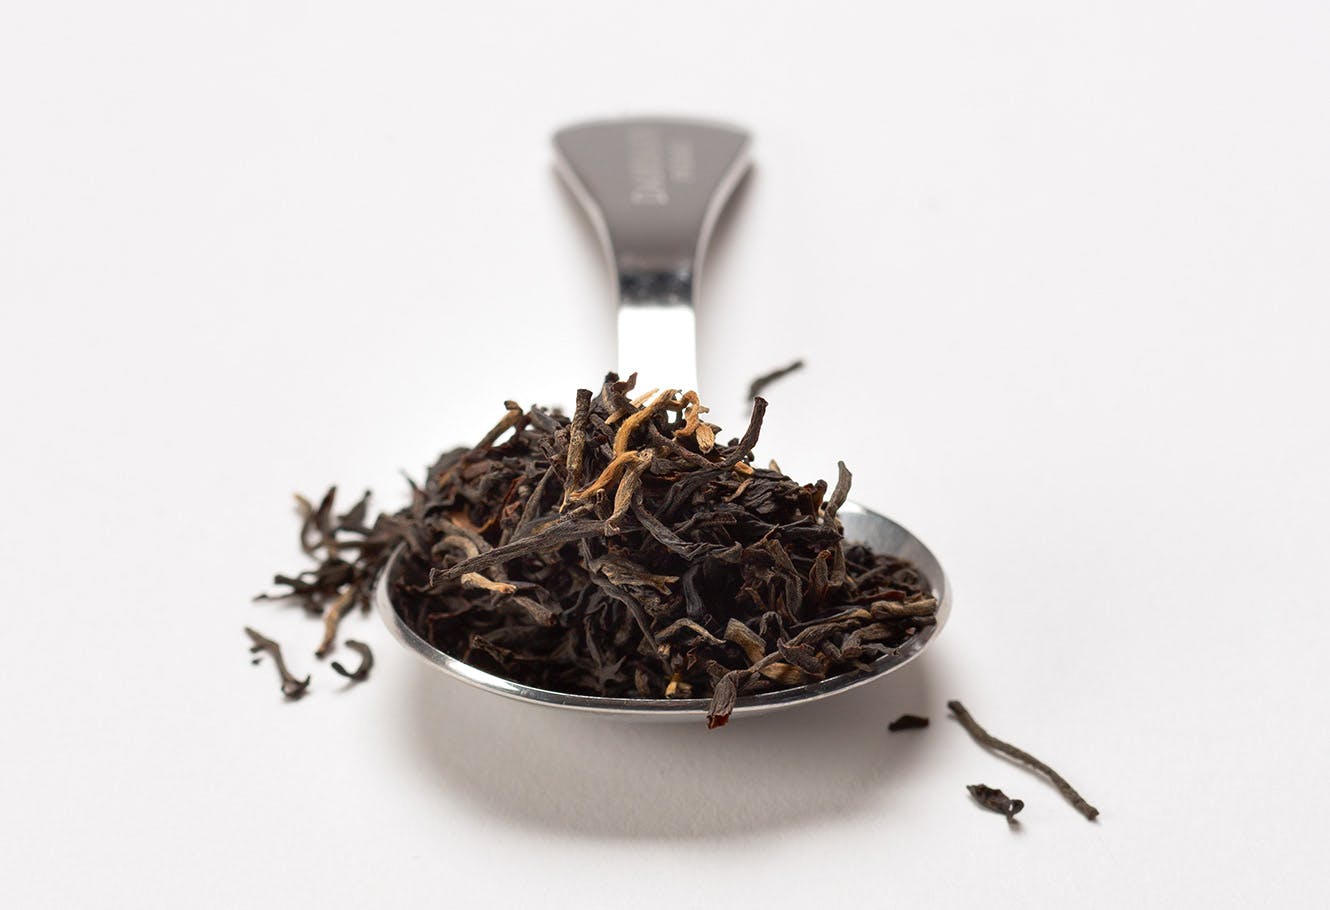 Cuillère à mesurer en acier inoxydable avec thé noir en vrac.